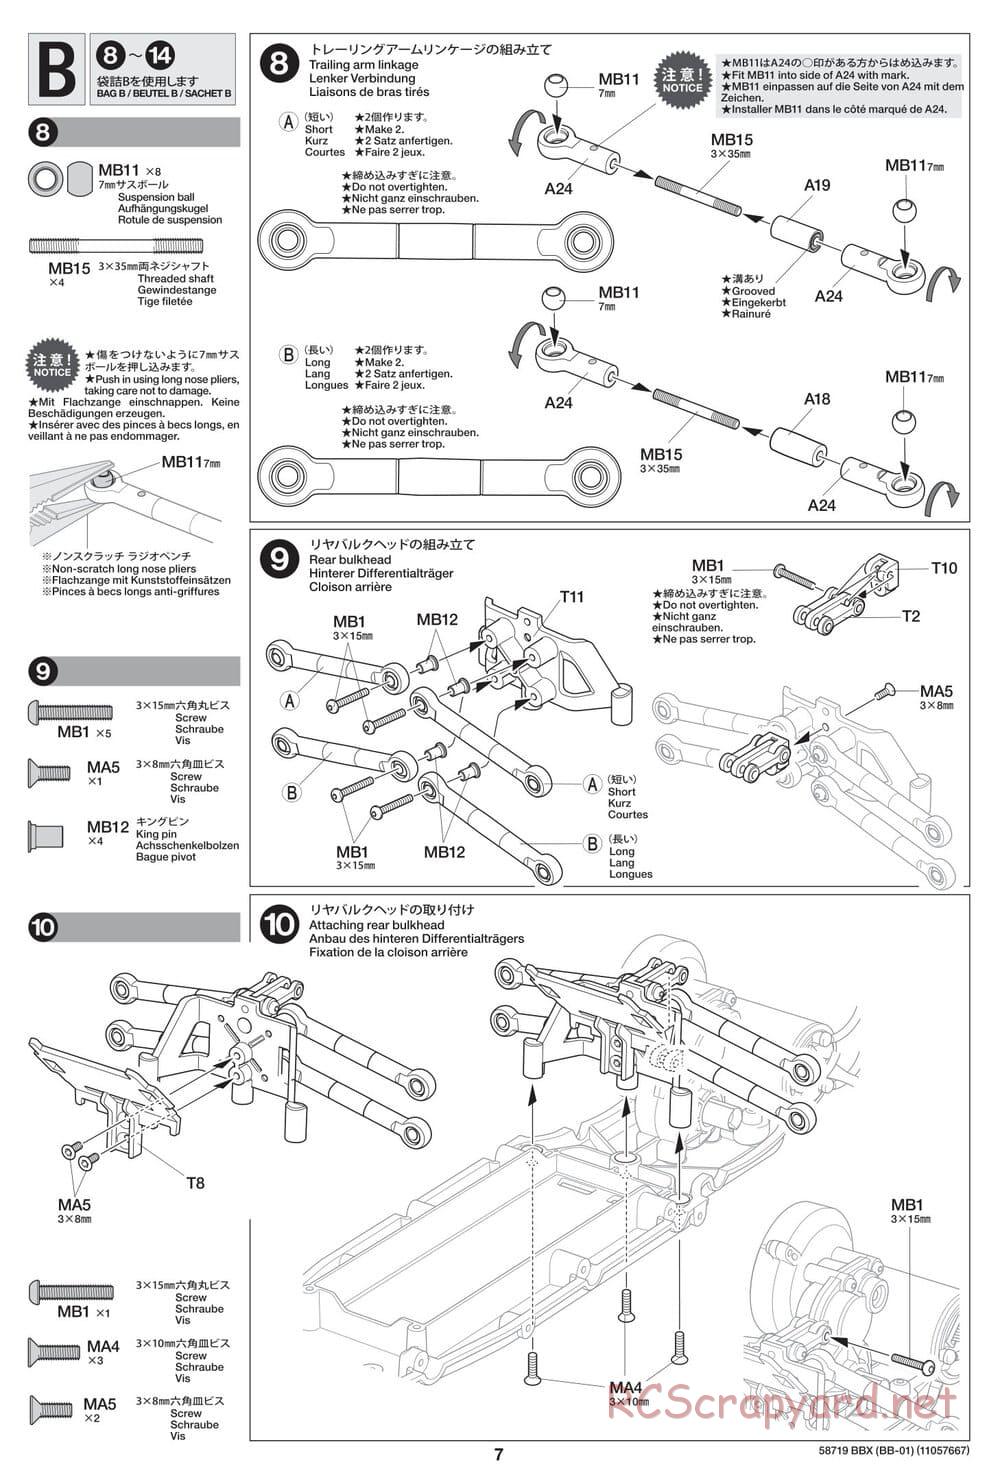 Tamiya - BBX - BB-01 Chassis - Manual - Page 7